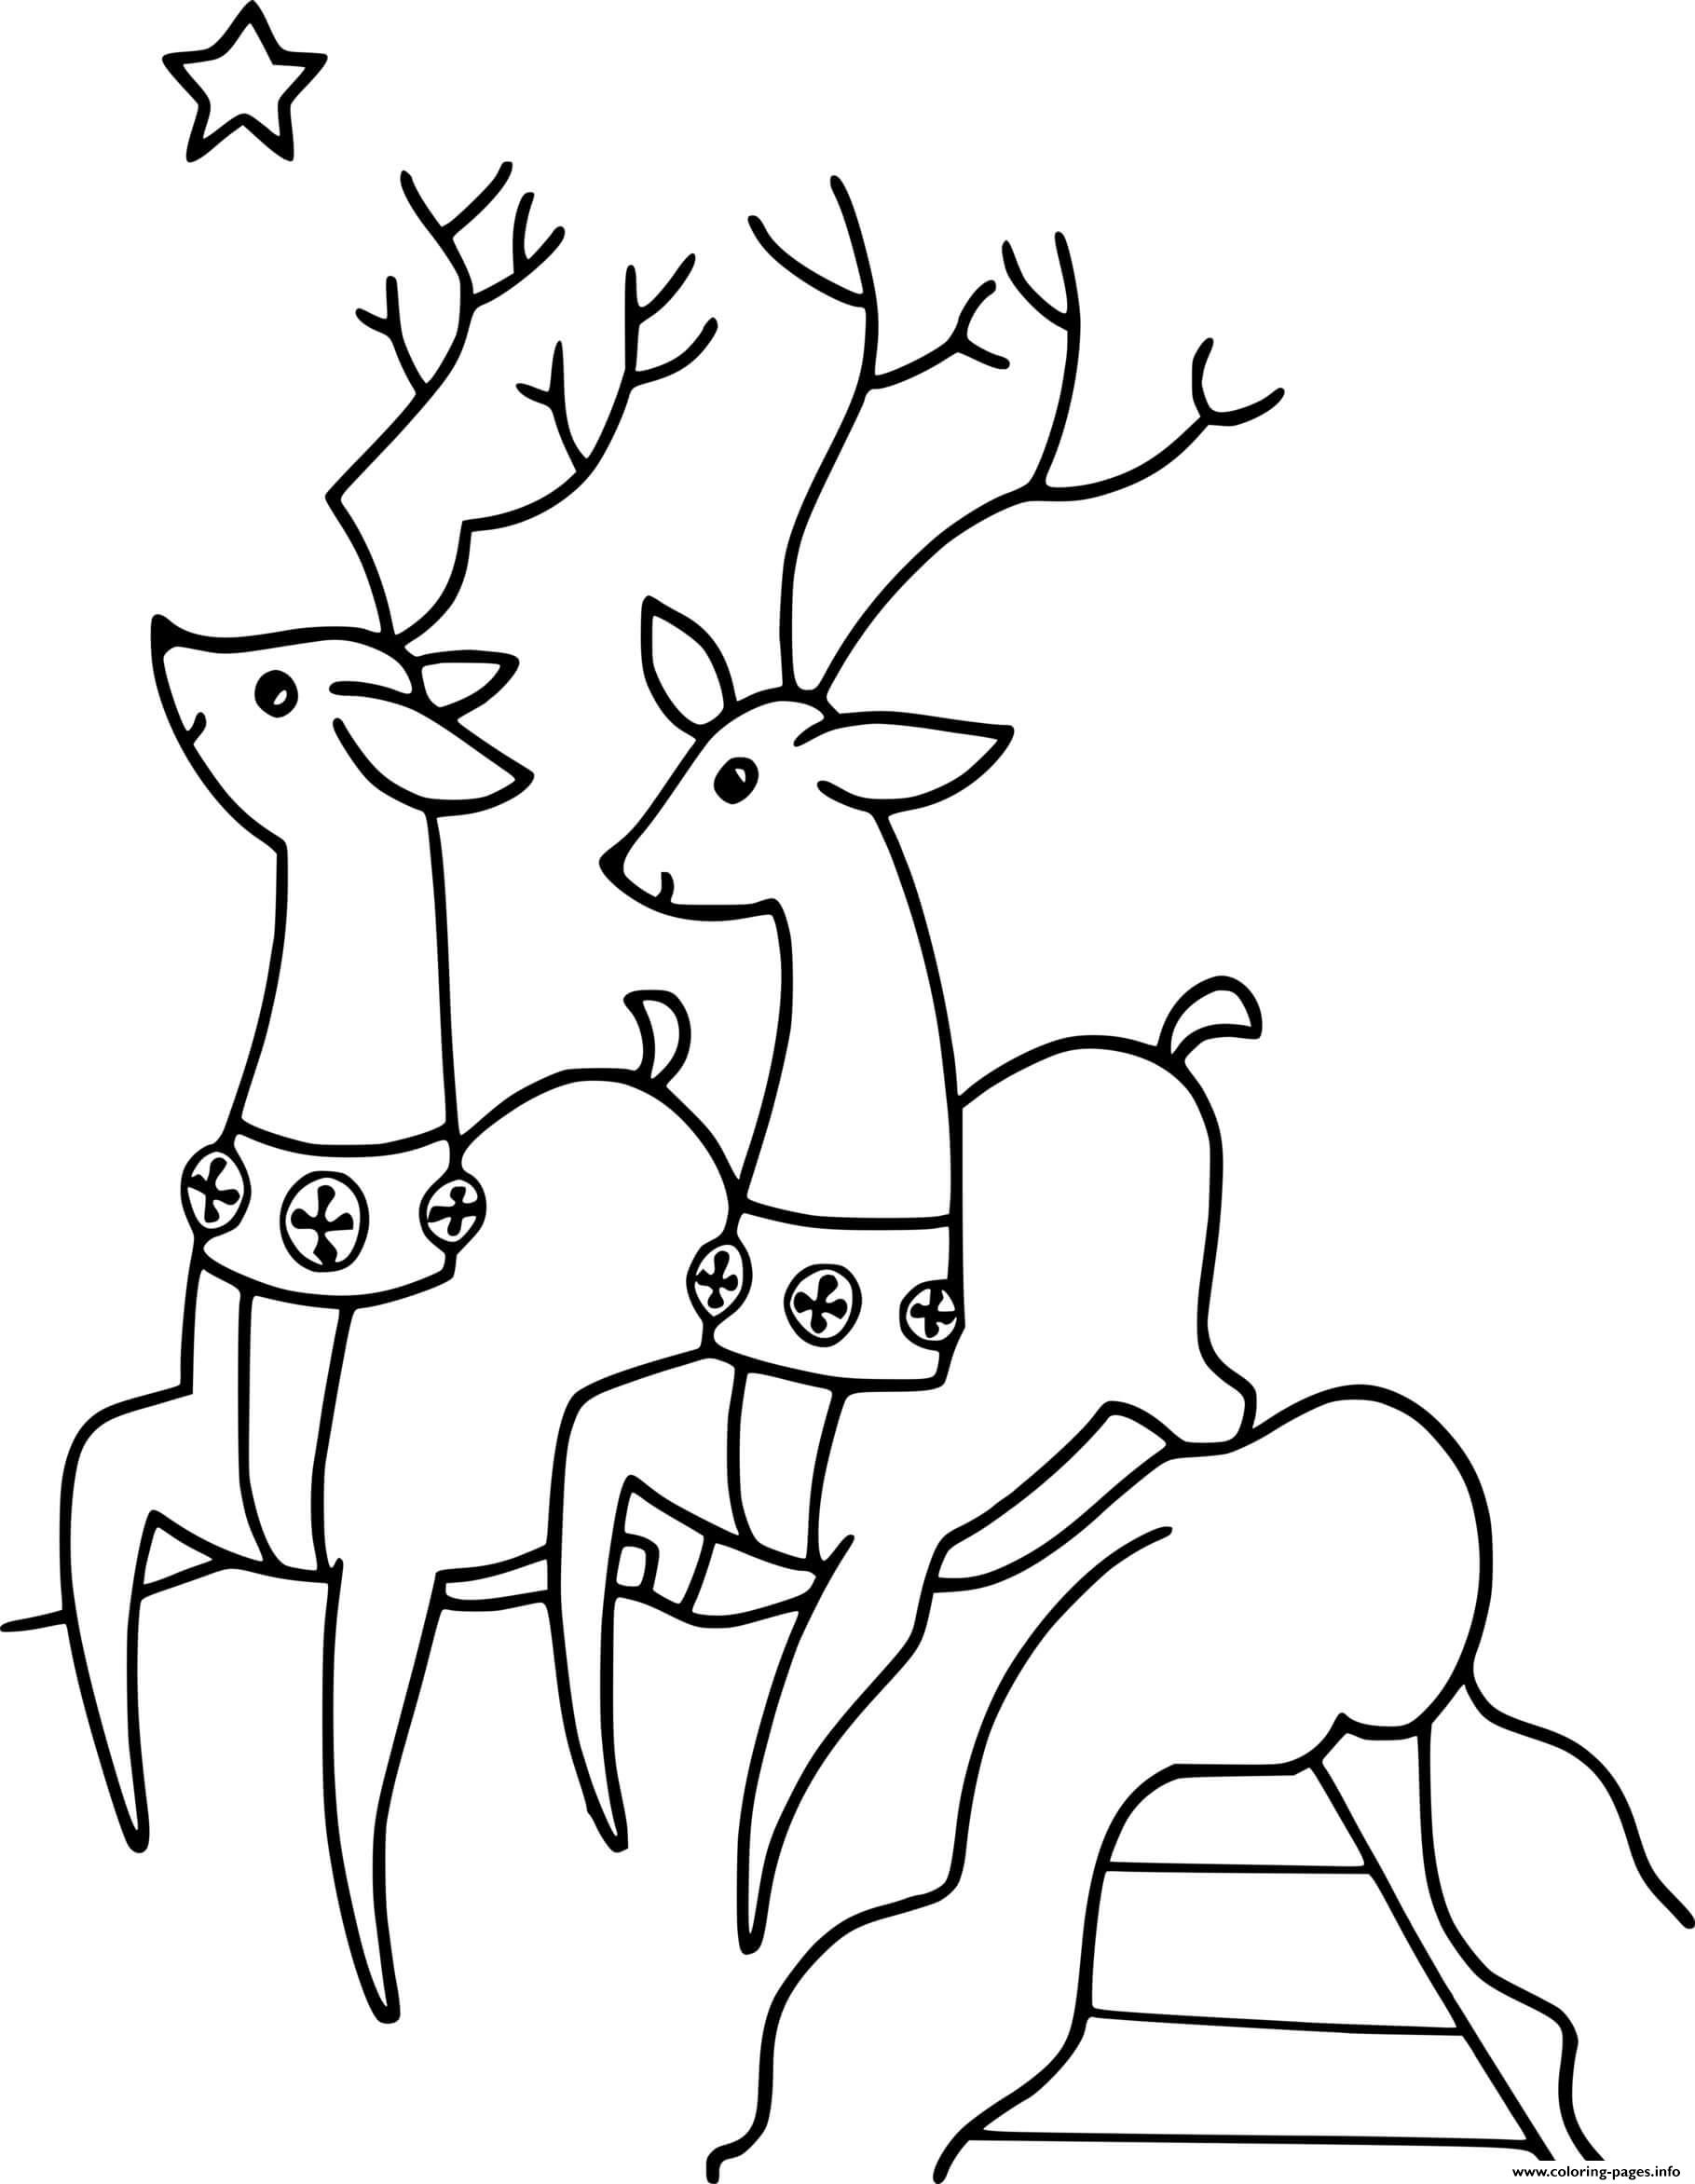 Two Simple Reindeer coloring